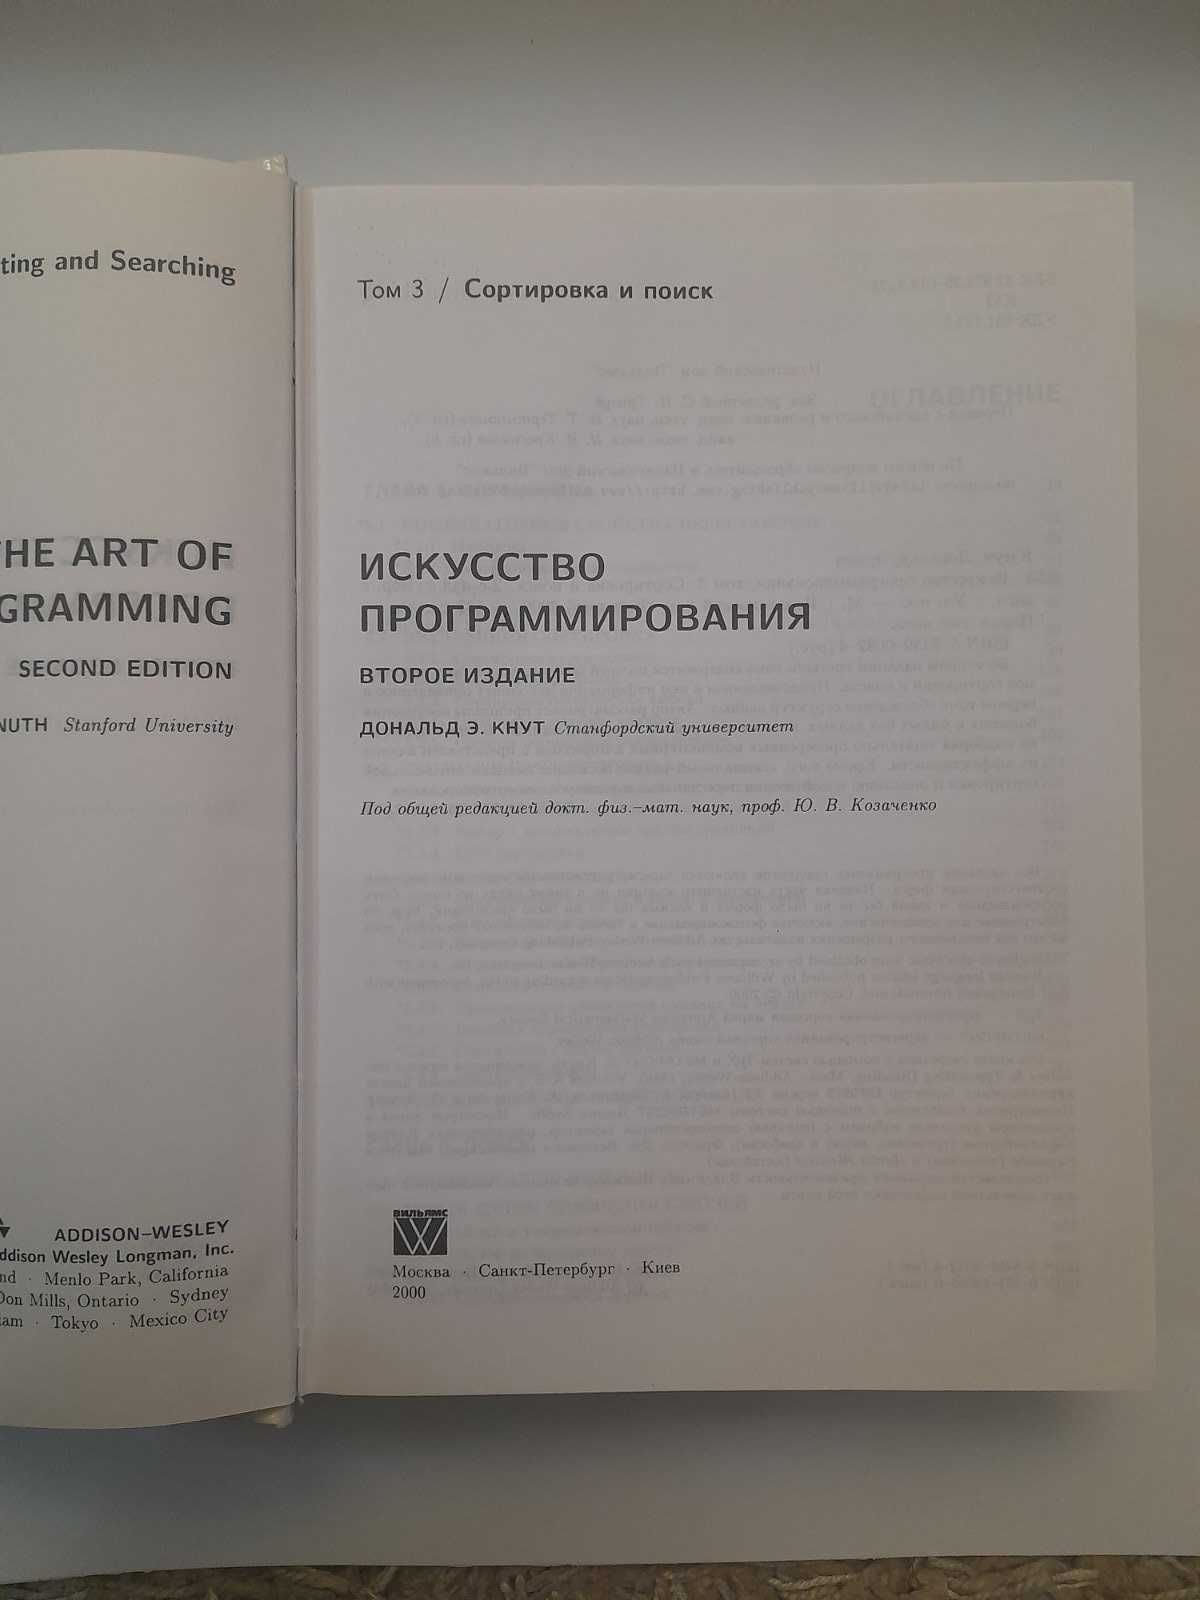 Дональд Кнут "Исскуство программирования", том 3, твердый переплет